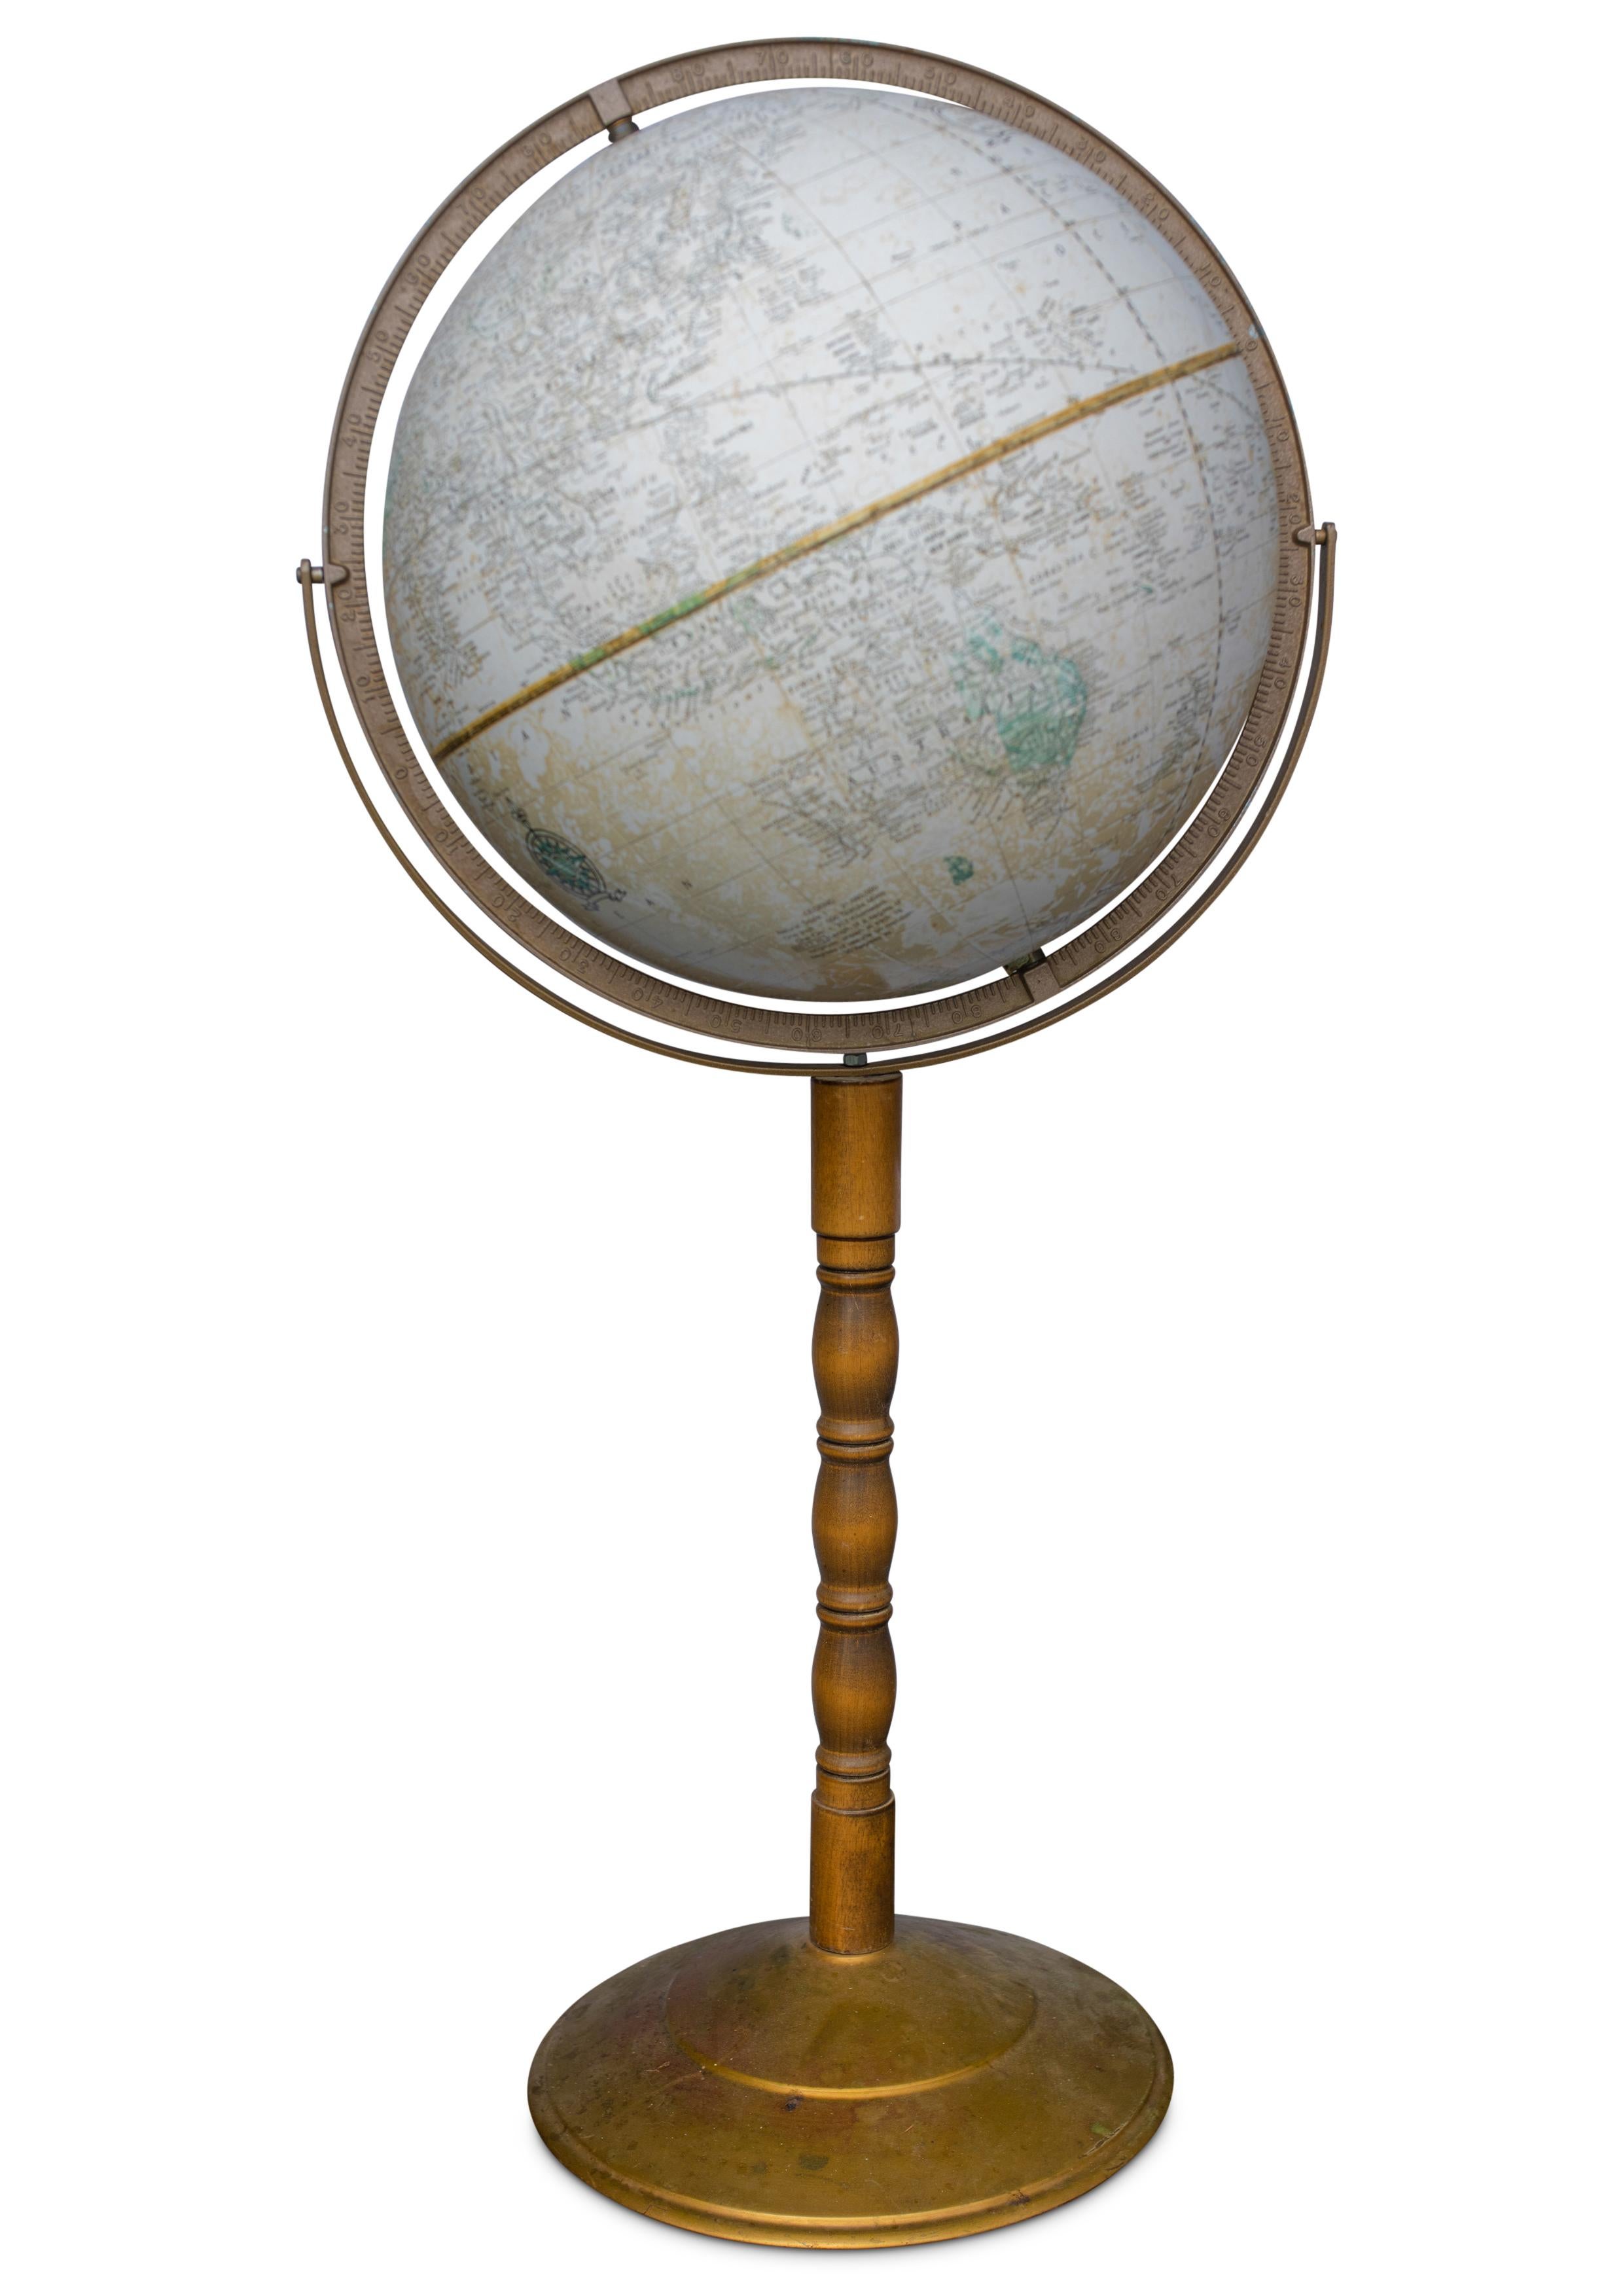 Globe terrestre impérial de Crams 

Globe terrestre sur un stand en bois dur tourné et en laiton Modèle n° 16 

Fabriqué par George F Crams Co. Indiana, U.S.A

Les tailles sont approximatives